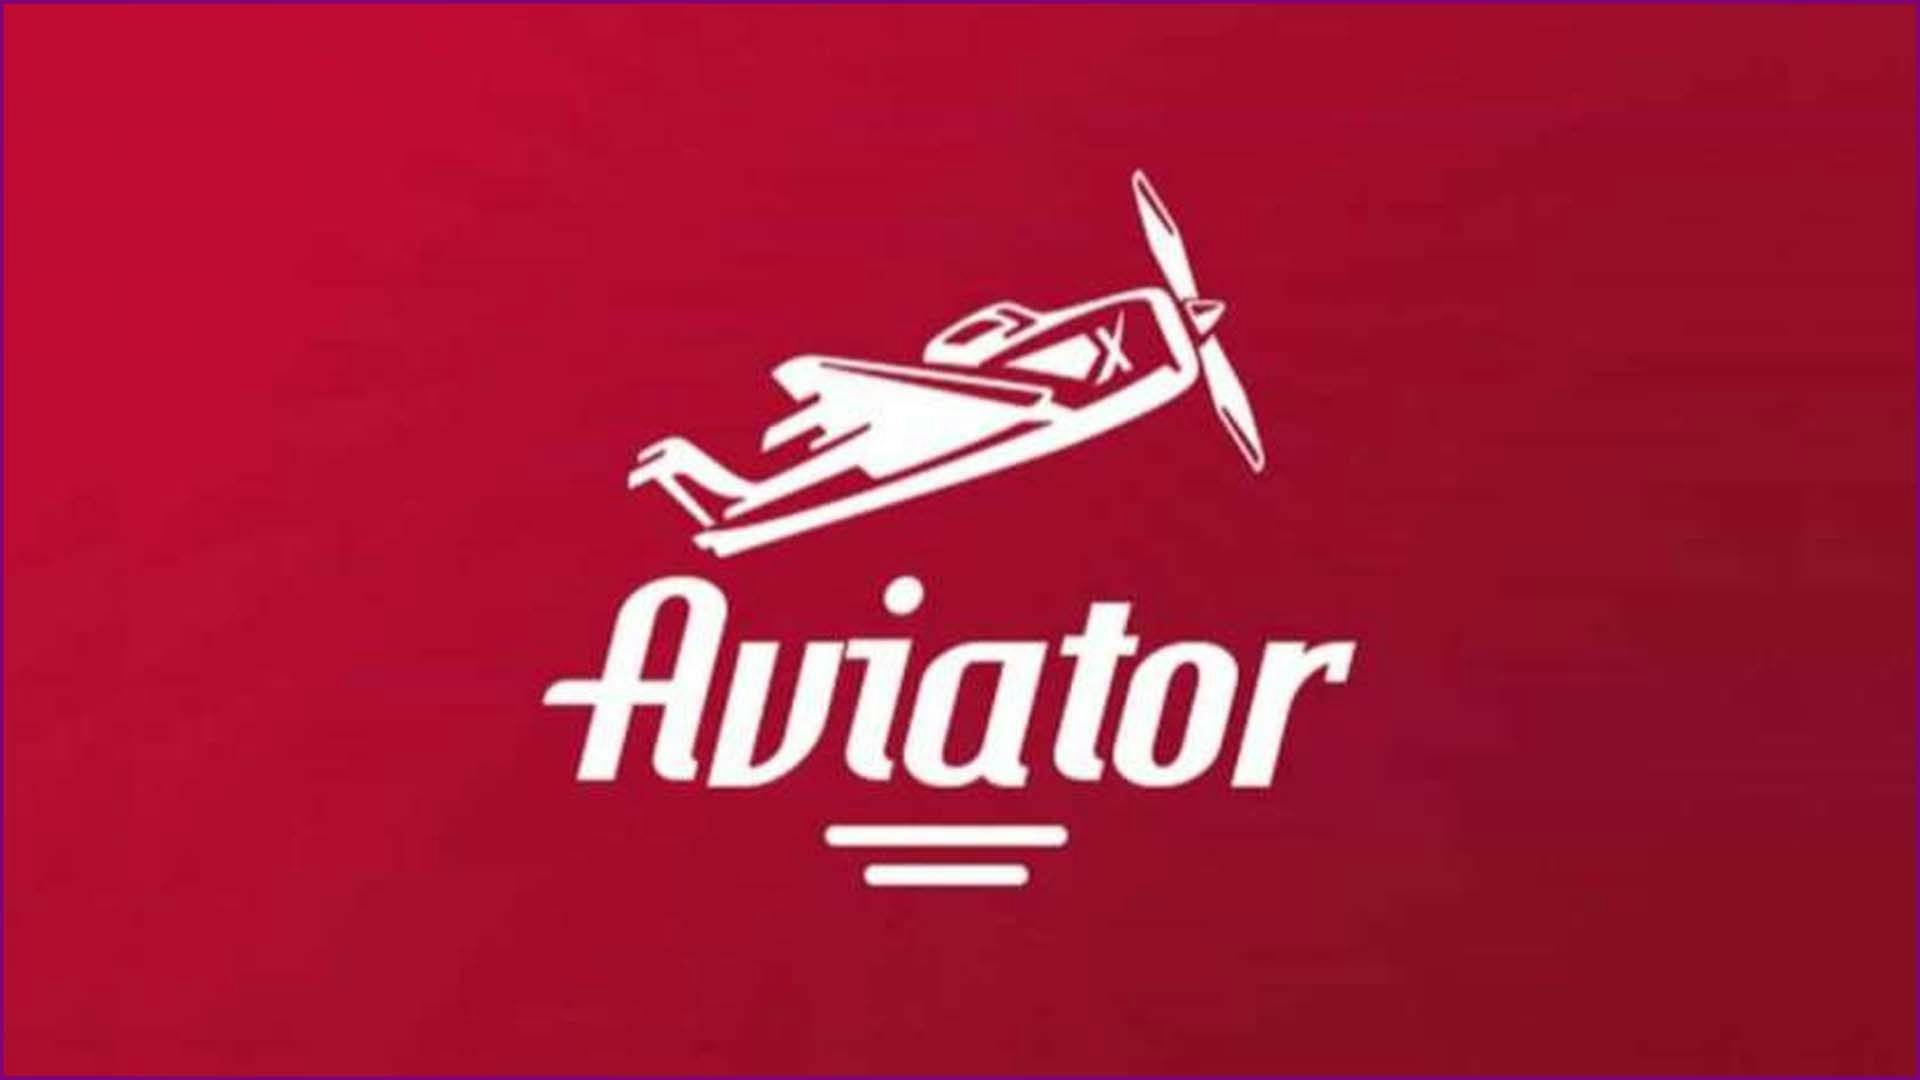 Aviator Slot Online